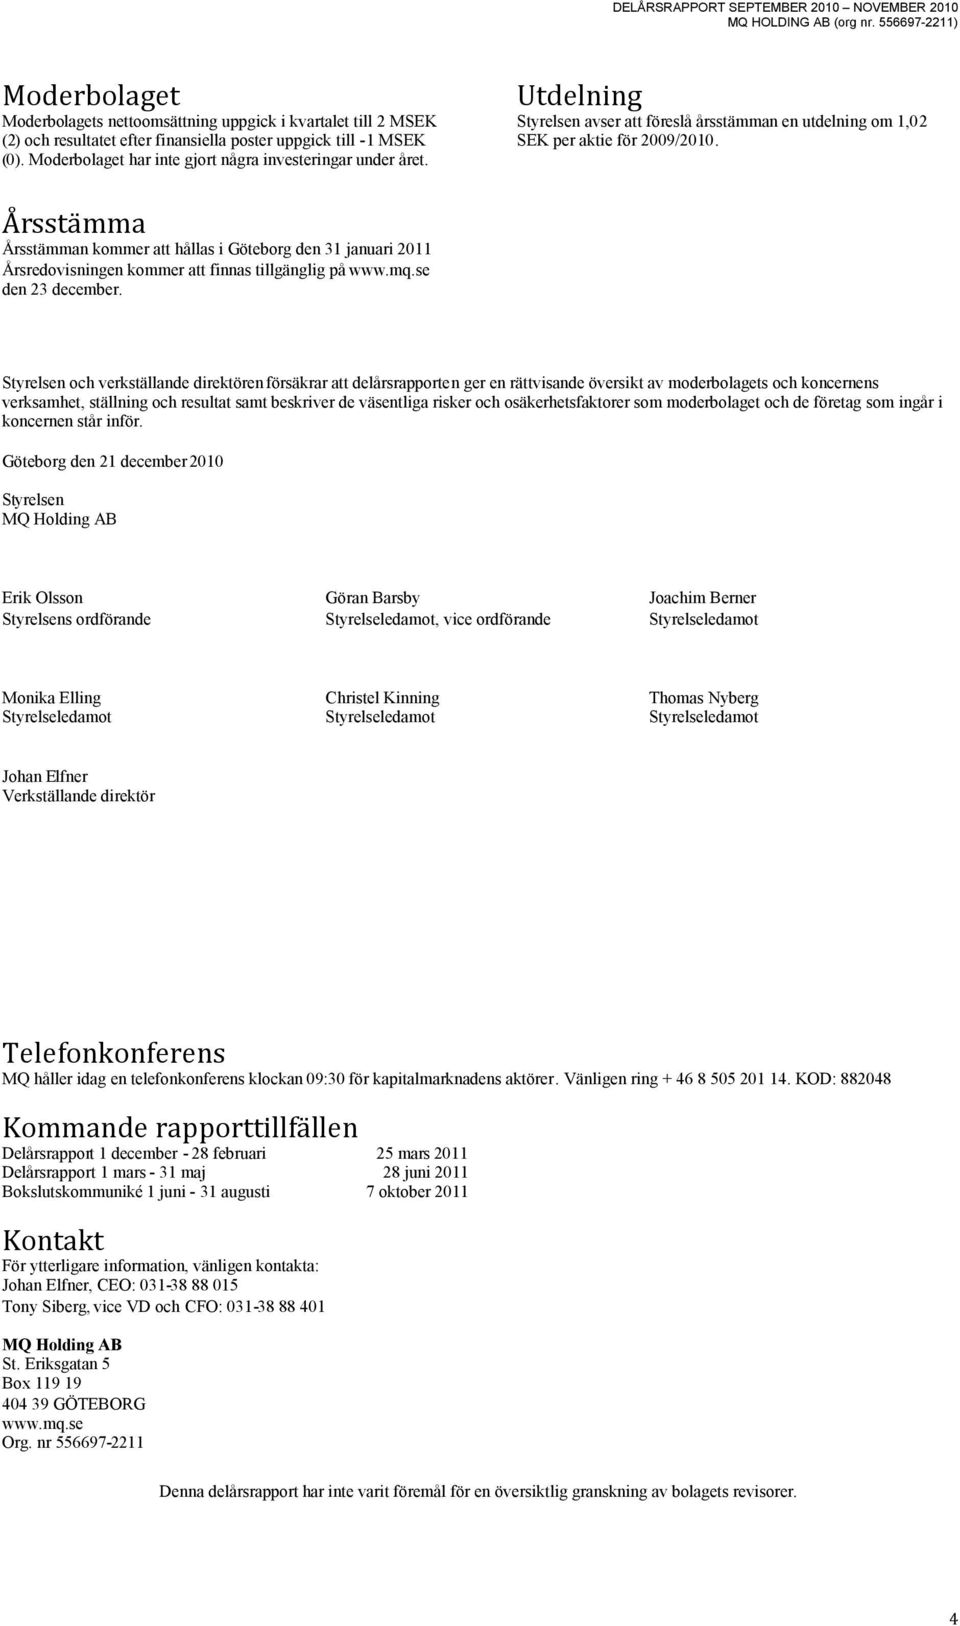 Årsstämma Årsstämman kommer att hållas i Göteborg den 31 januari 2011 Årsredovisningen kommer att finnas tillgänglig på www.mq.se den 23 december.